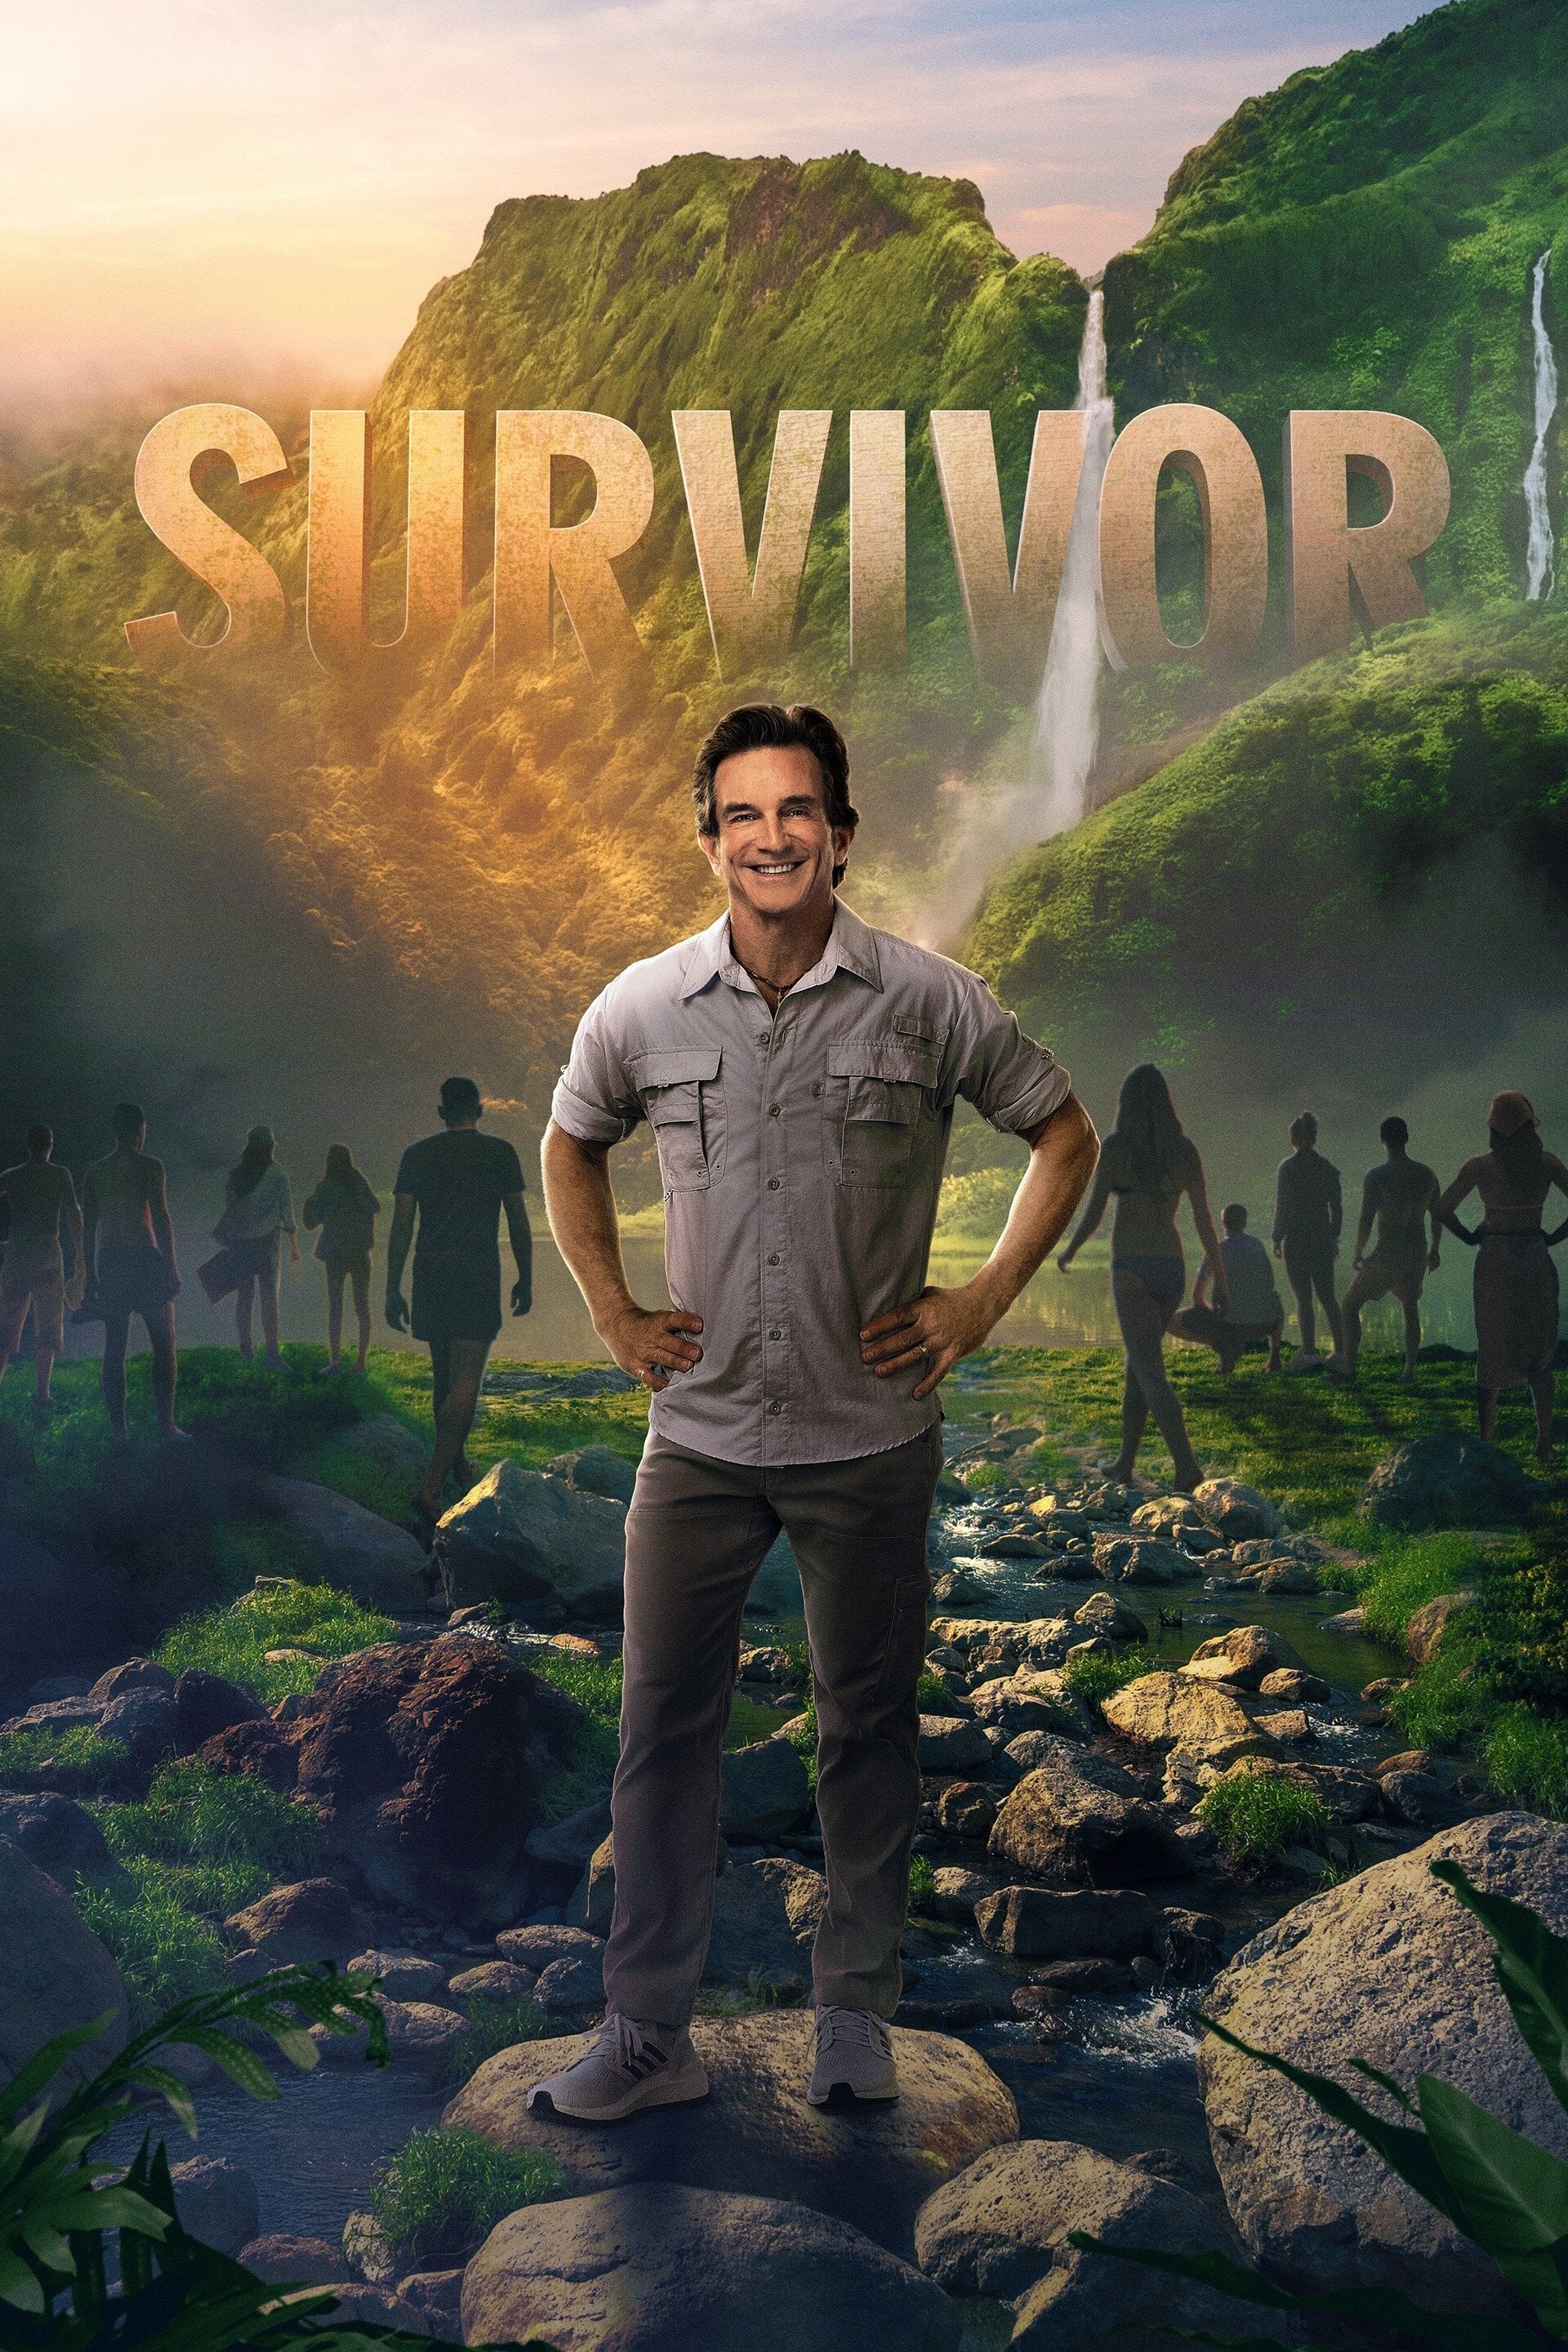 Survivor TV Shows About Voting